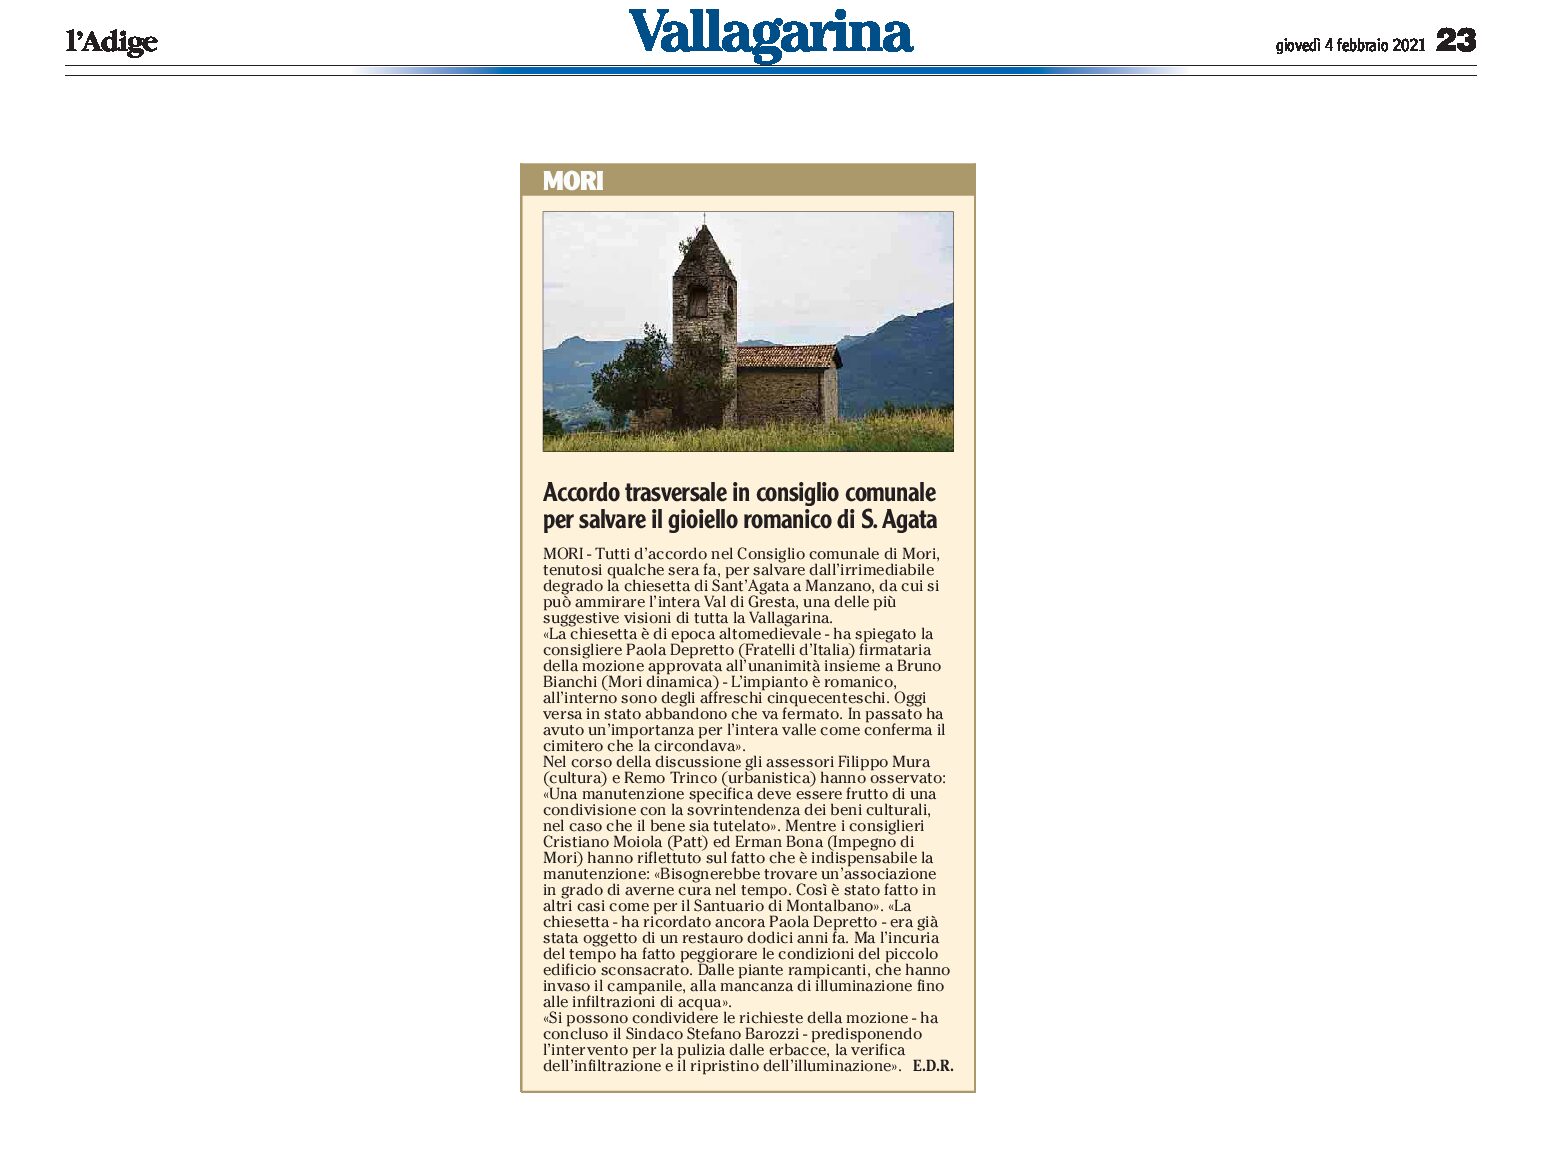 Mori: accordo trasversale in consiglio comunale per salvare il gioiello romanico di Sant’Agata